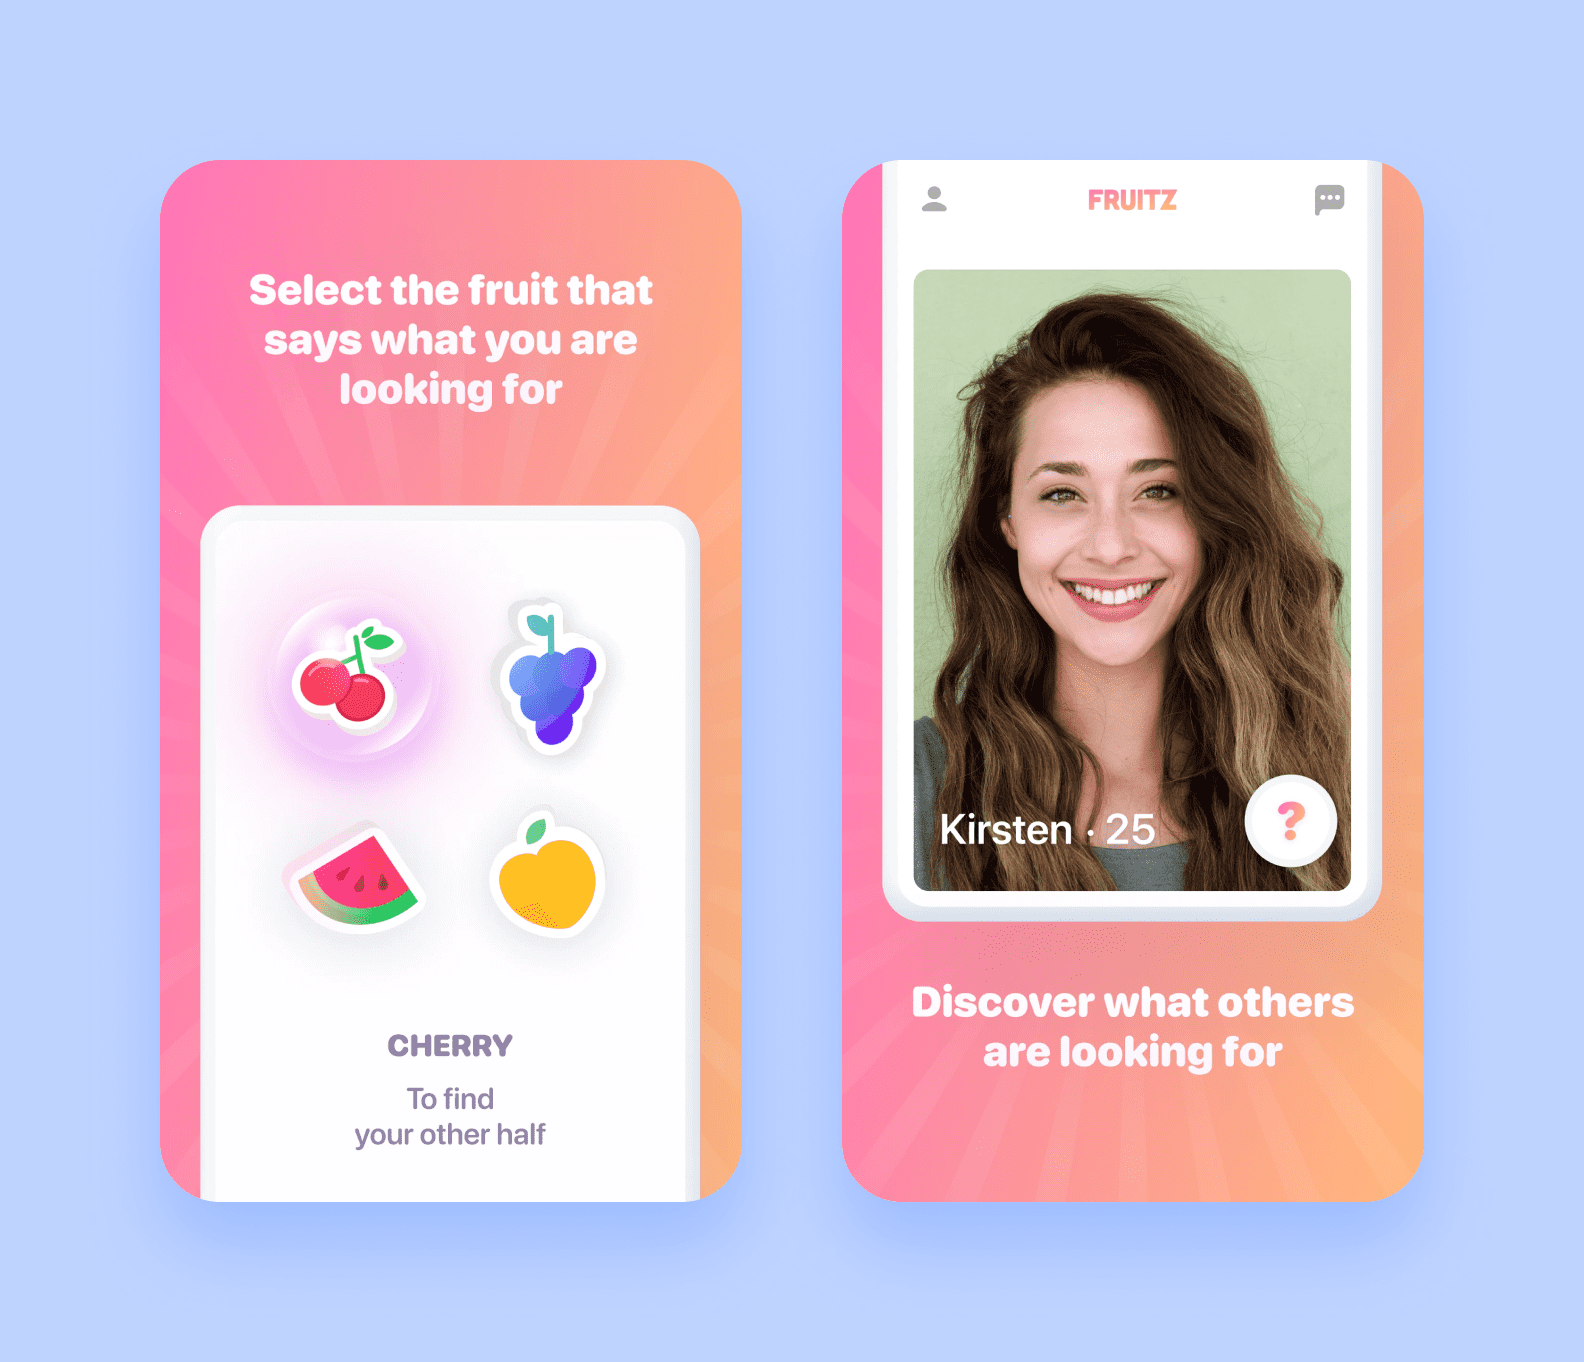 приложение предлагает выбрать фрукт в зависимости от того, какие отношения вы ищете.